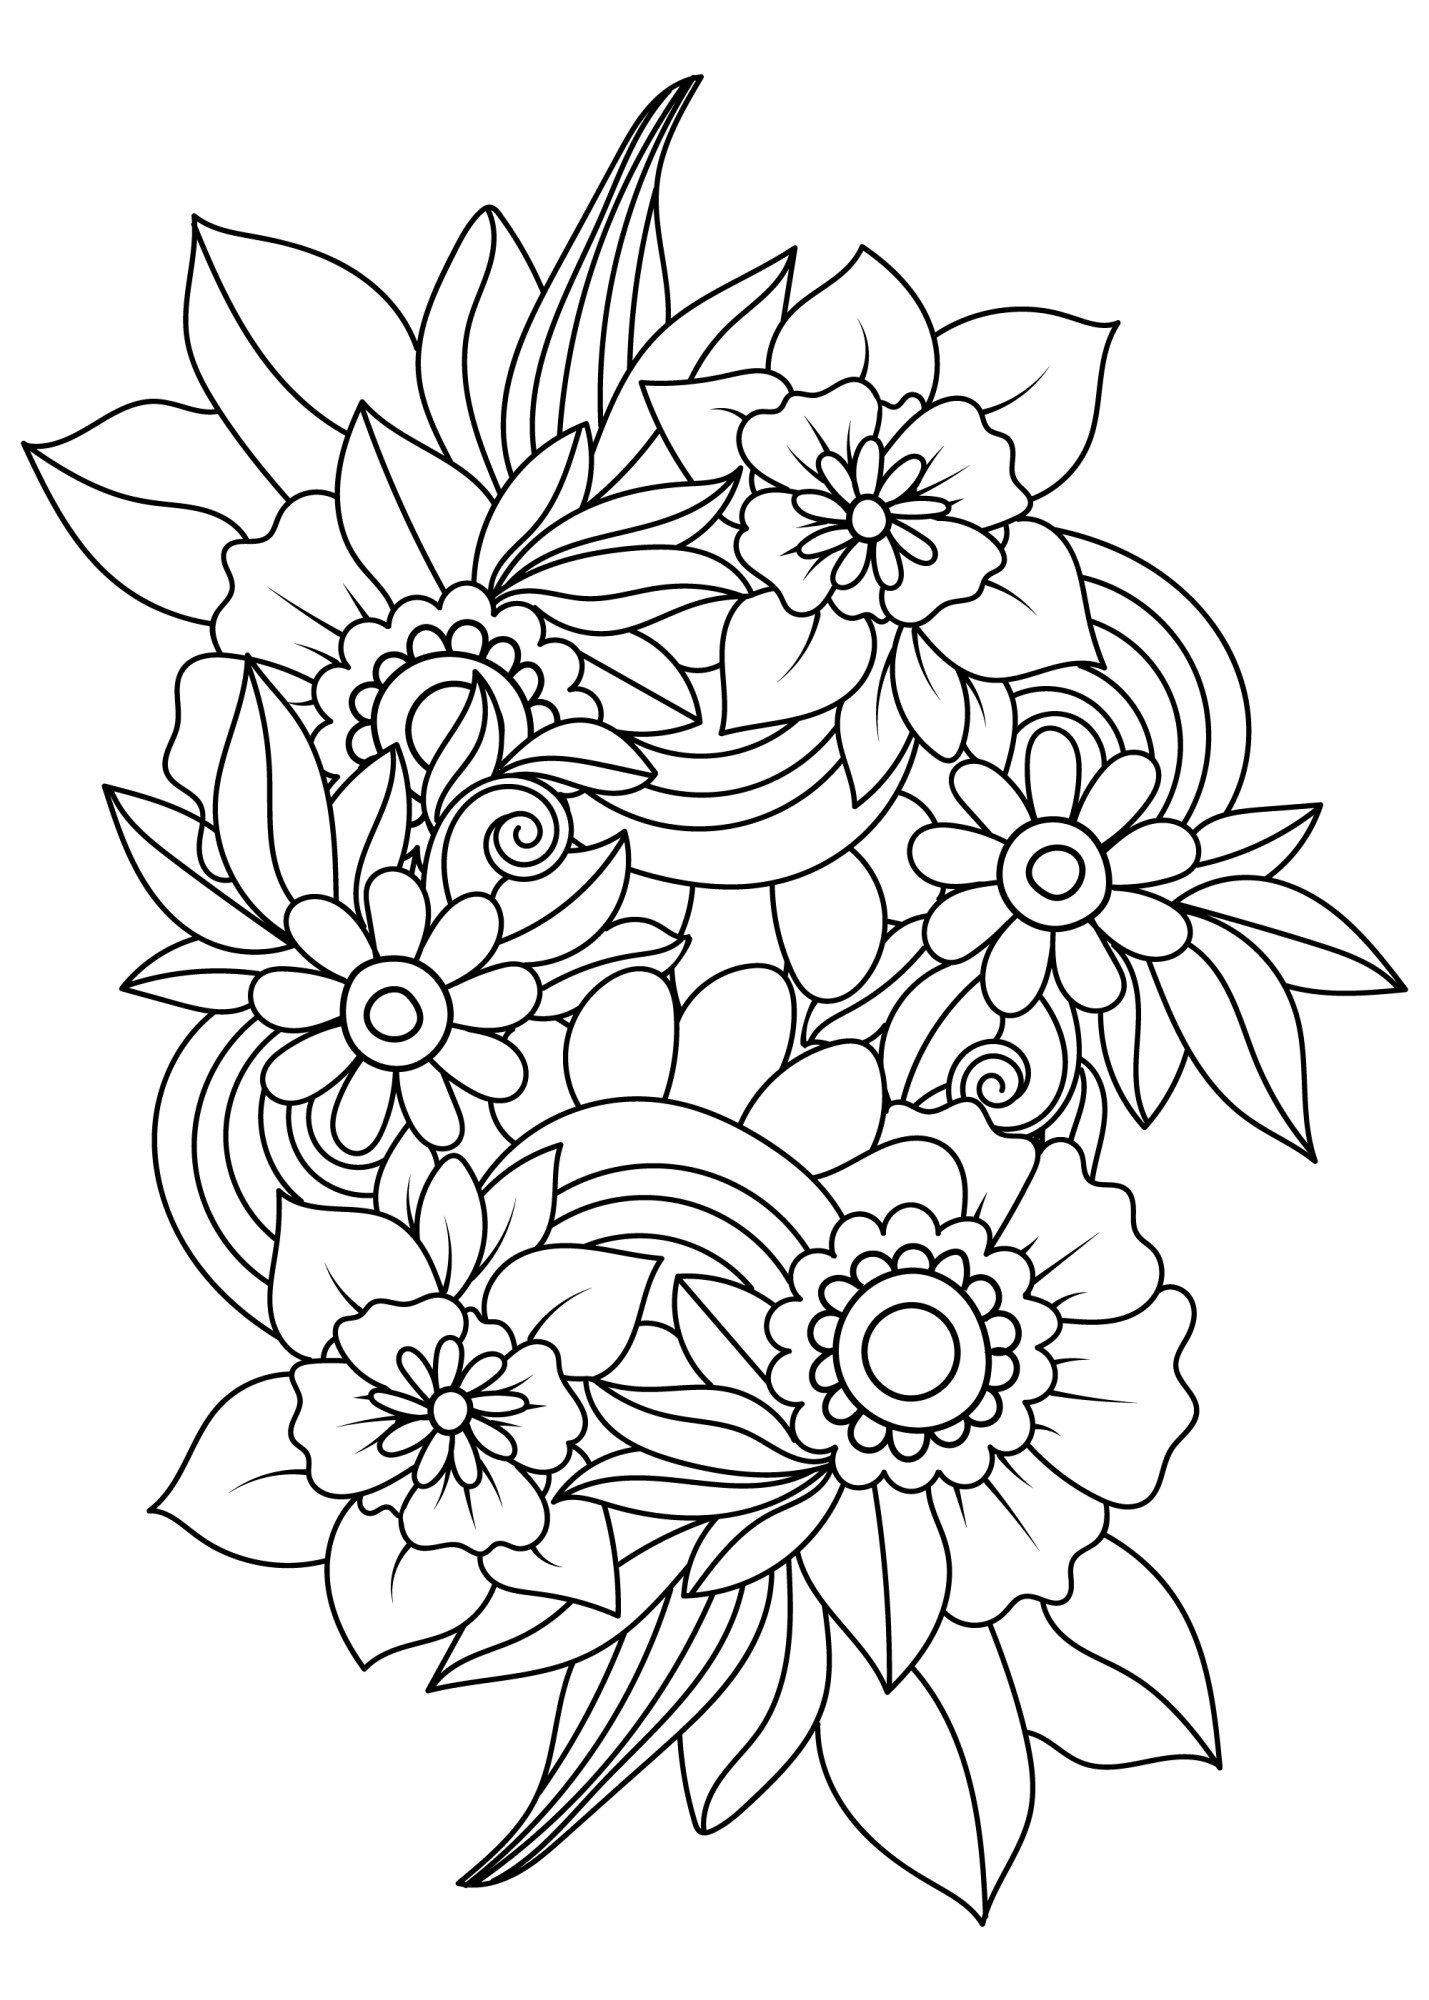 Раскраска для детей: цветы каракули